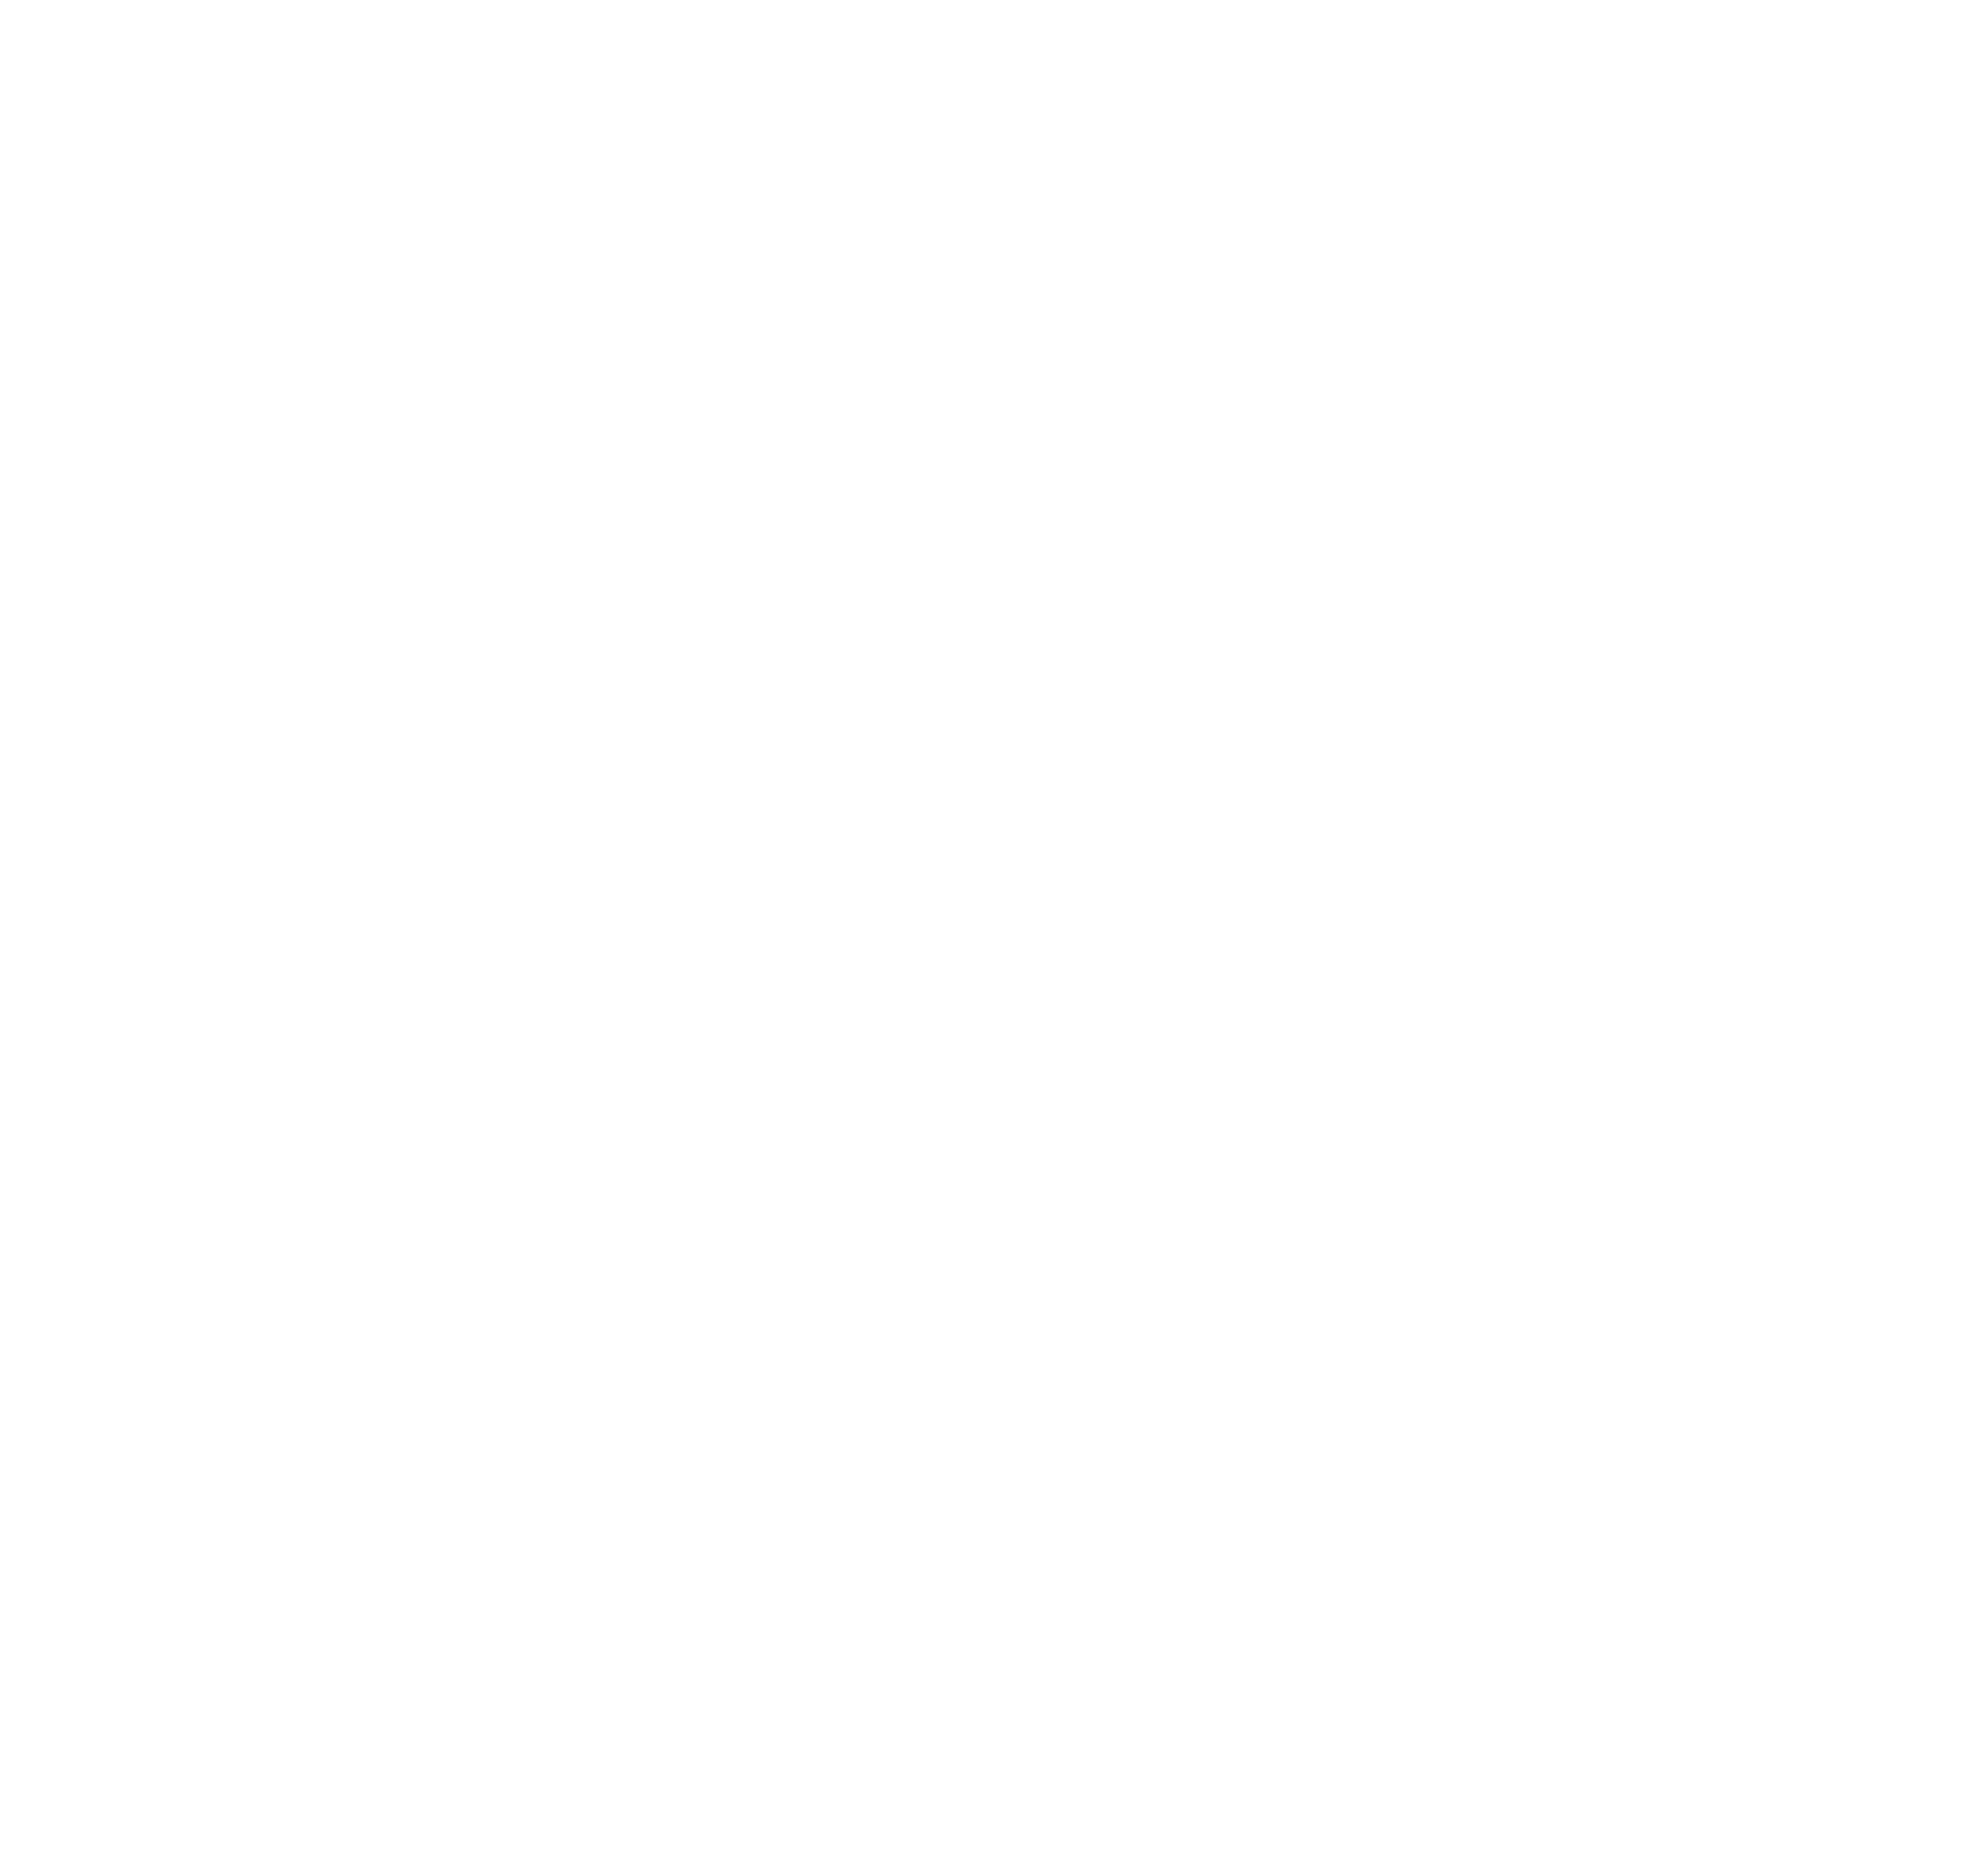 Del Mate Films Productora